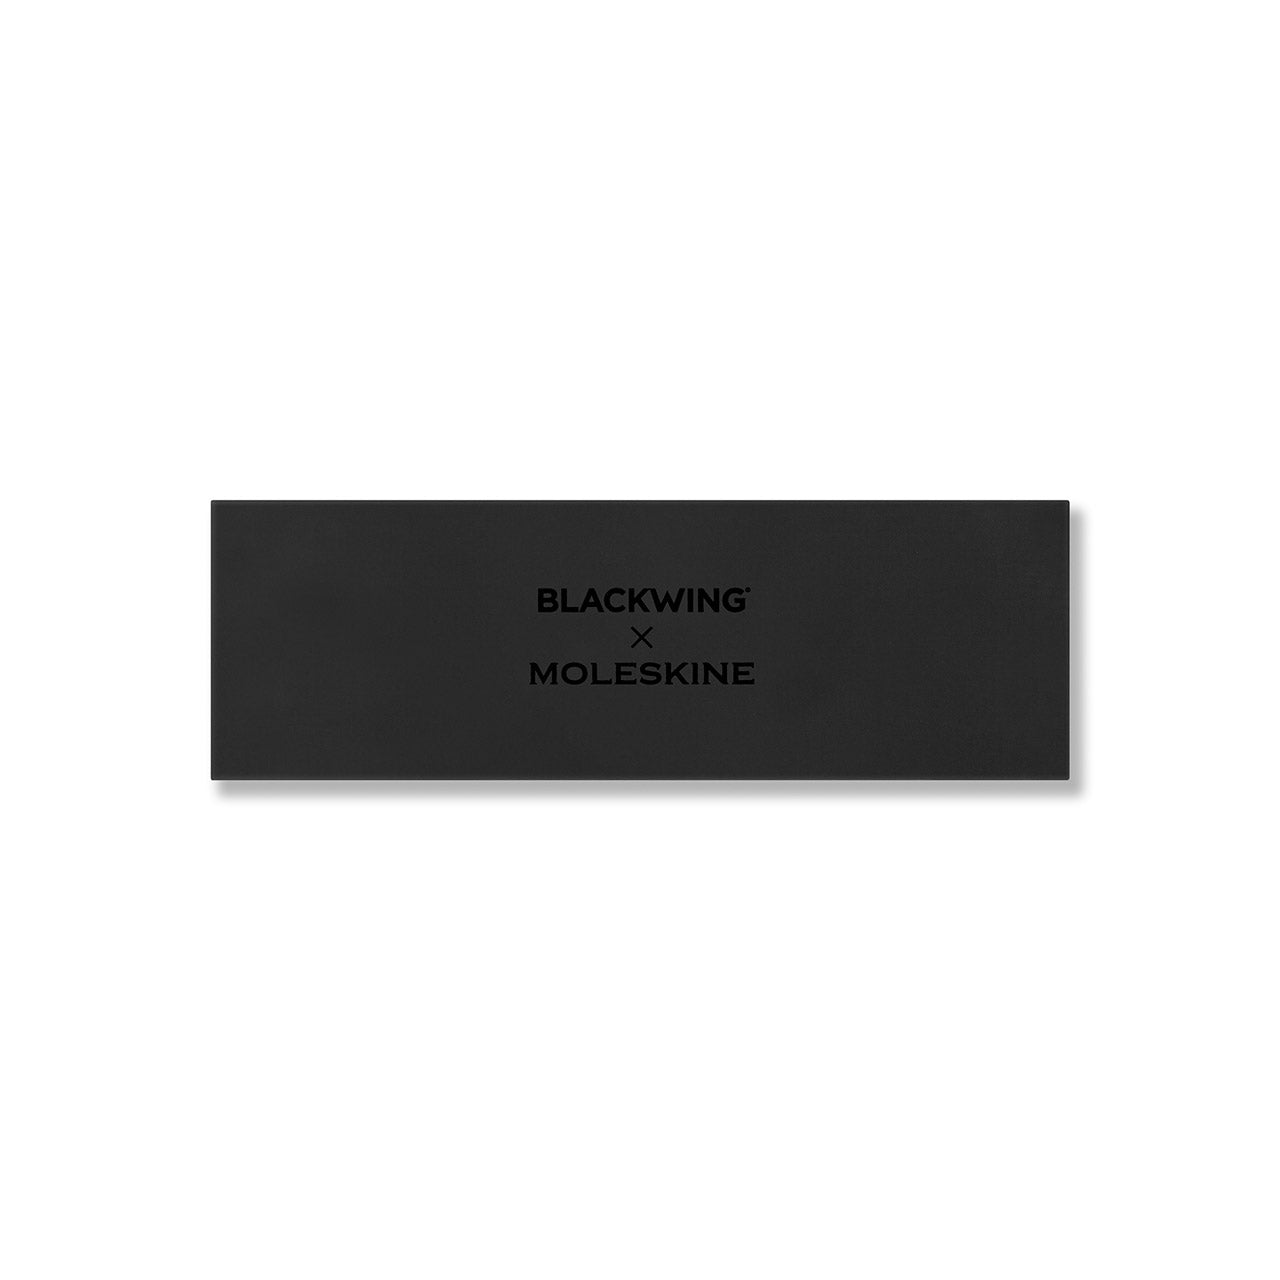 Blackwing x Moleskine Pencil and Sharpener Set